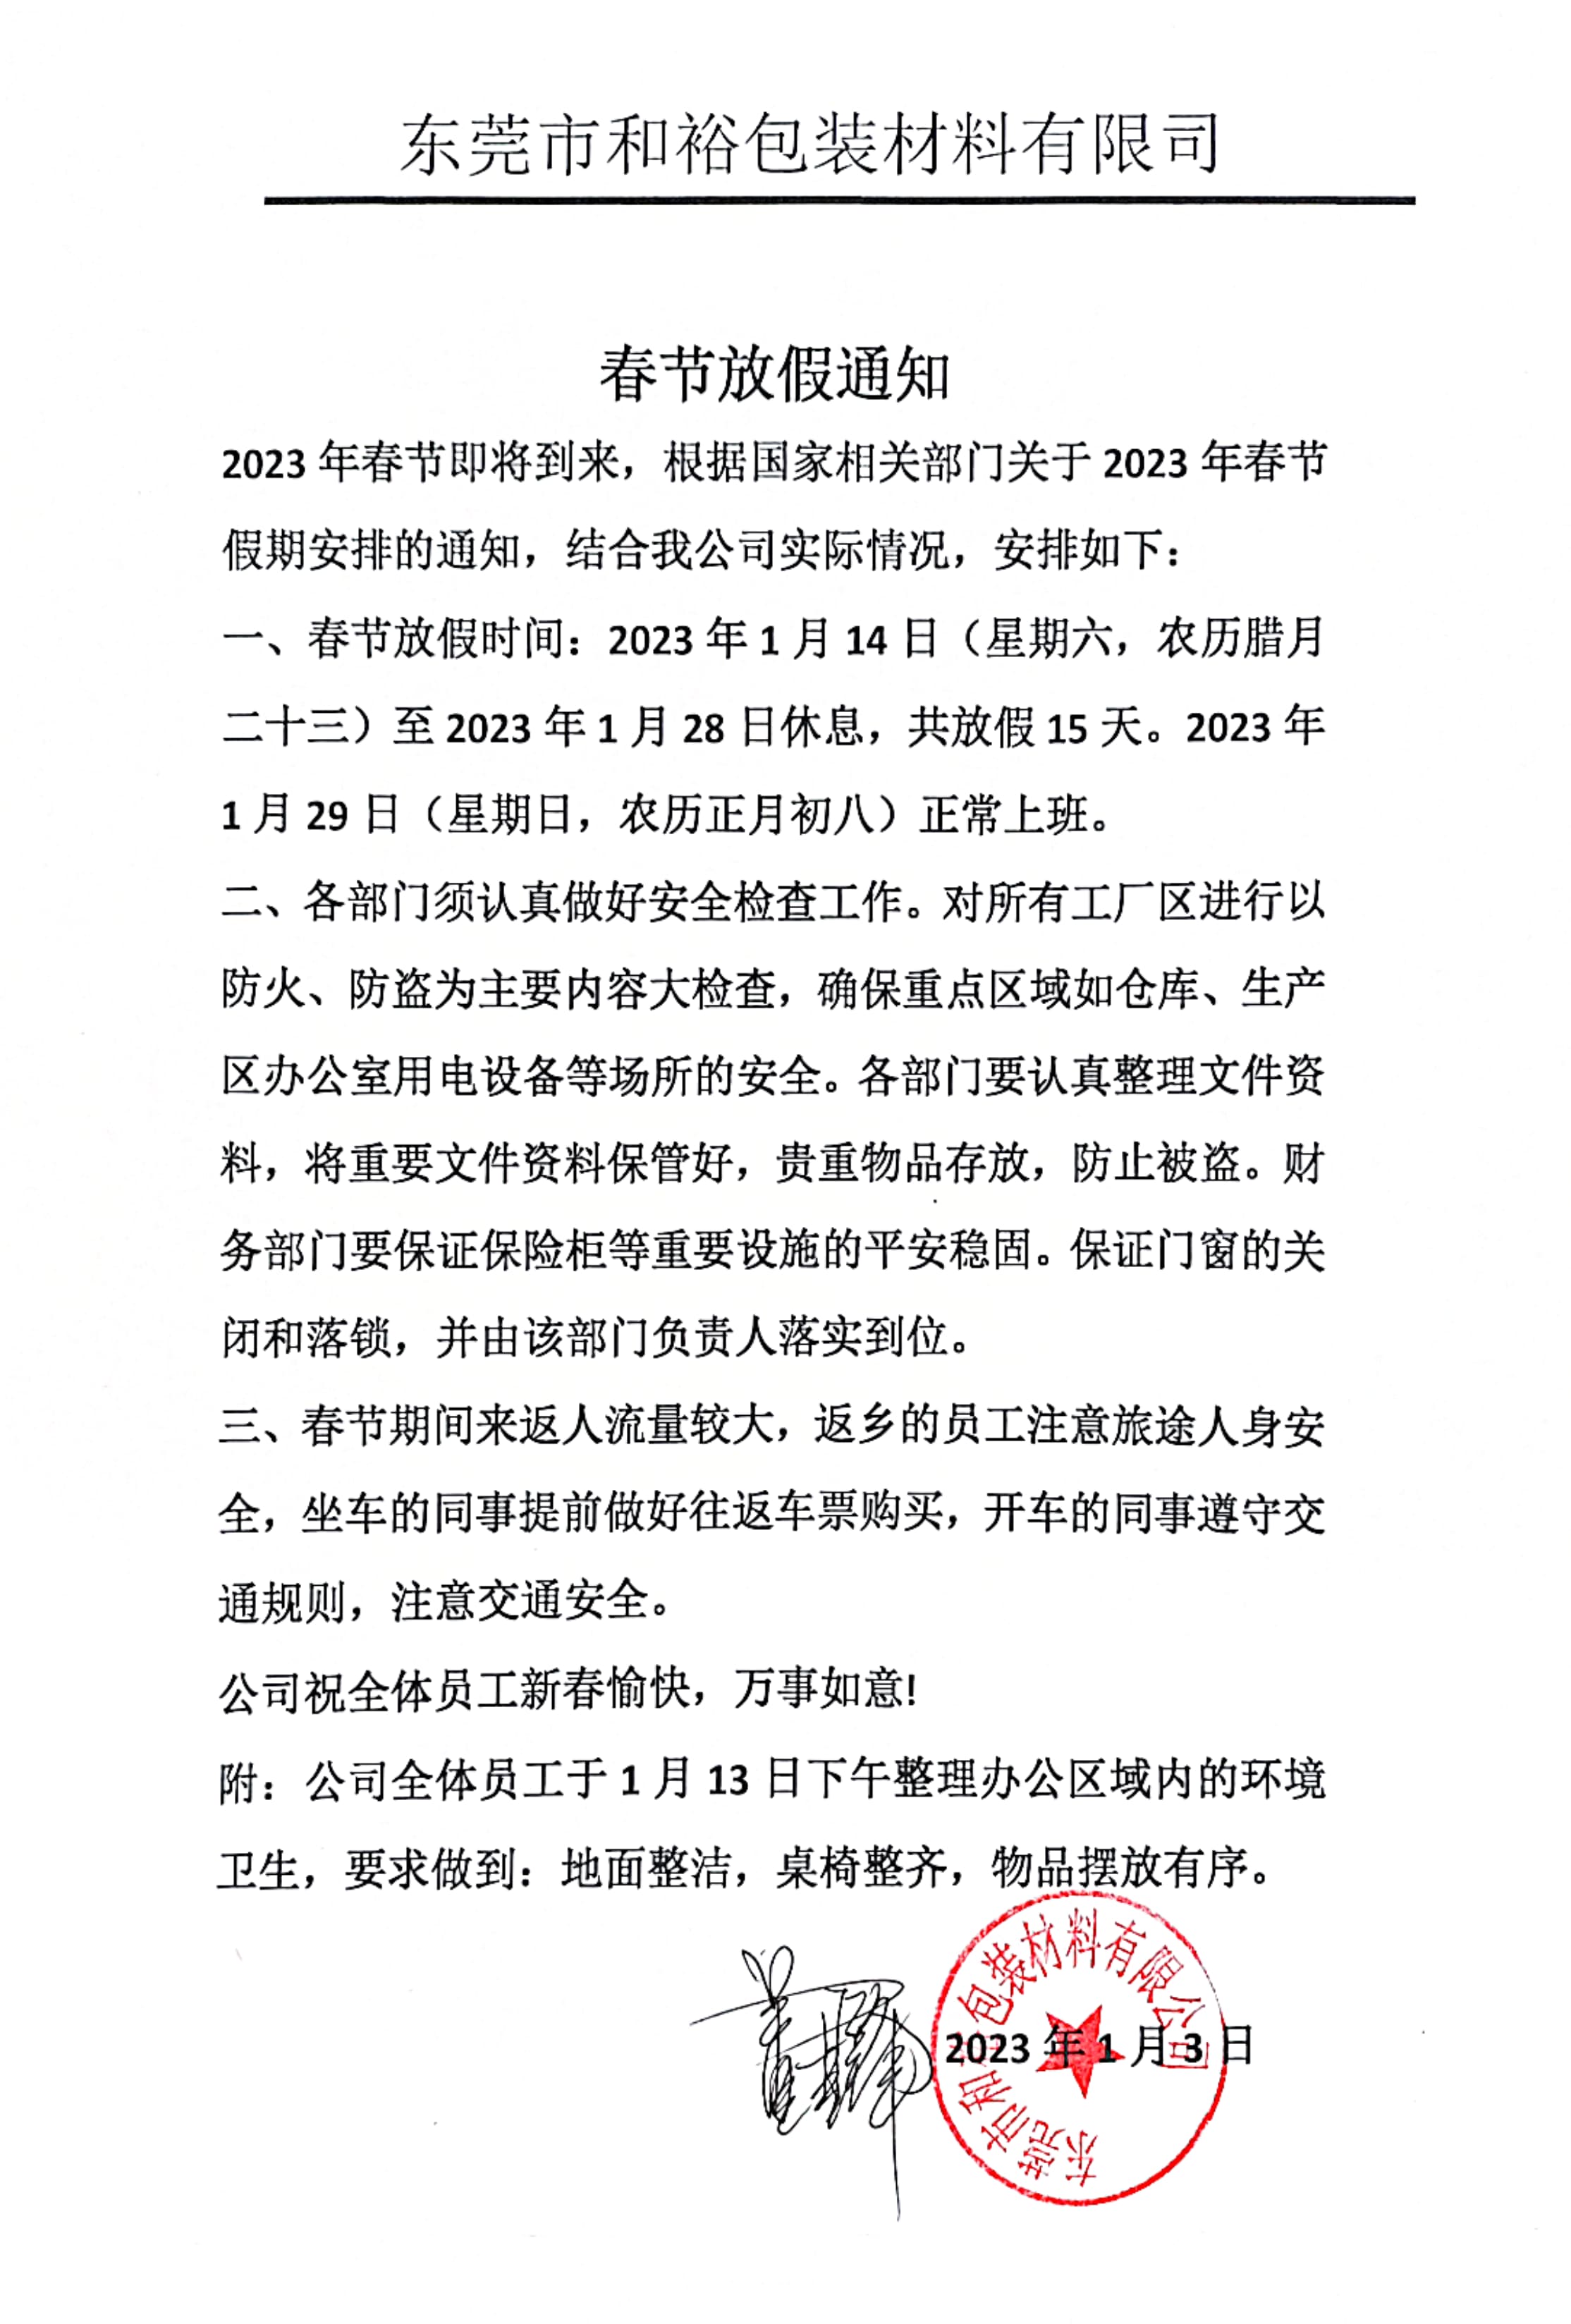 广安市2023年和裕包装春节放假通知